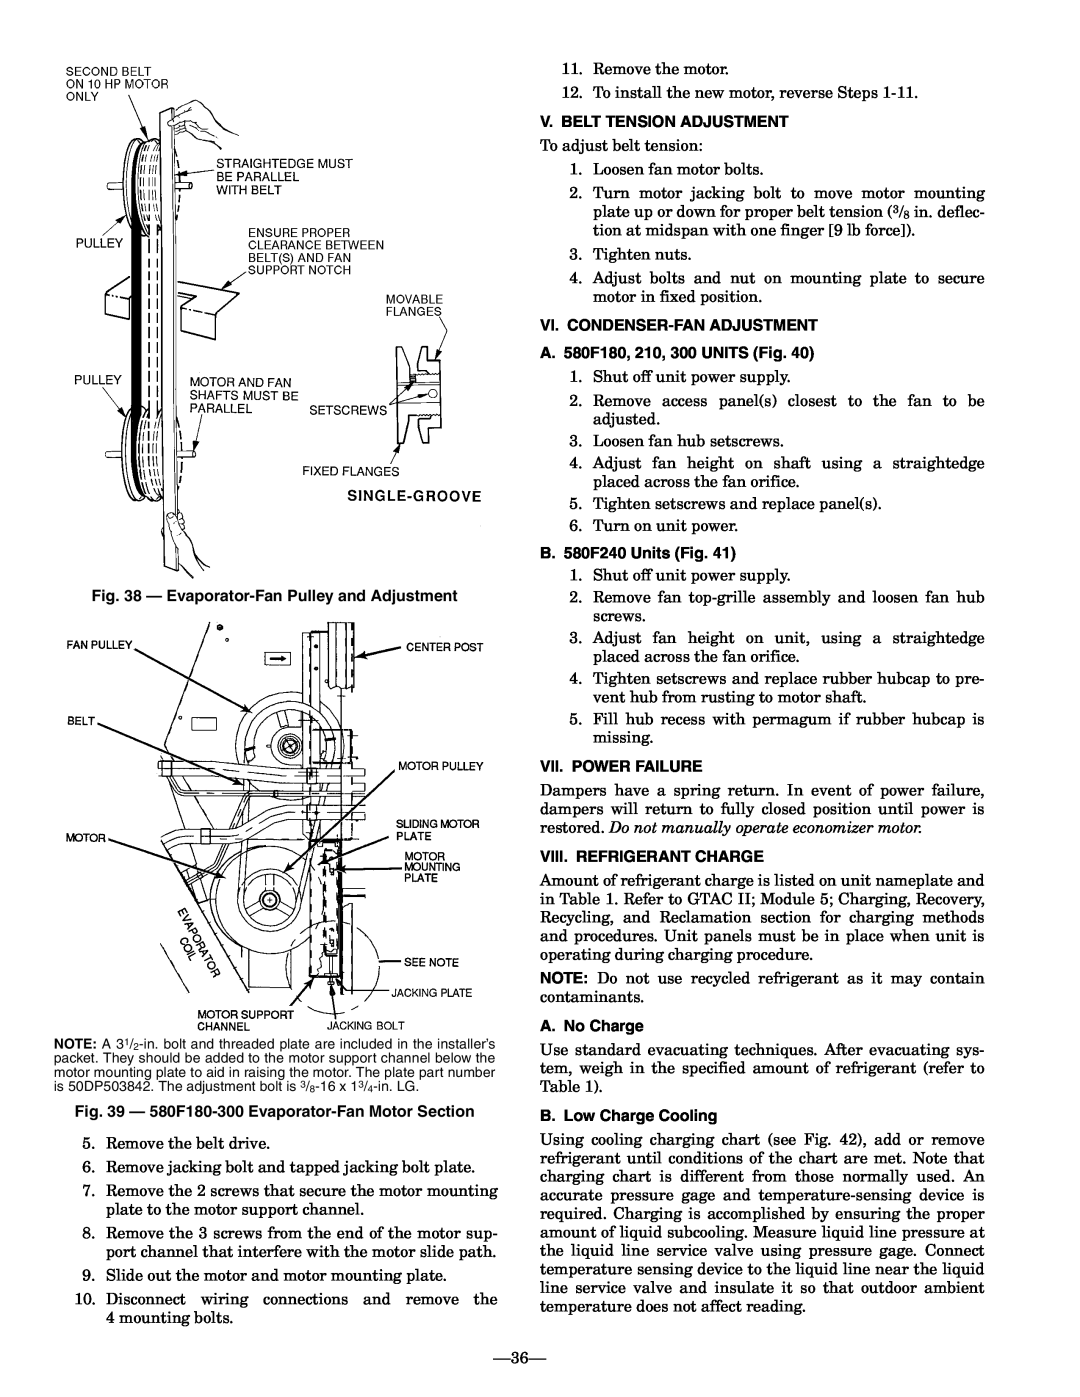 Bryant Evaporator-FanPulley and Adjustment, 580F180-300 Evaporator-FanMotor Section, V. Belt Tension Adjustment 